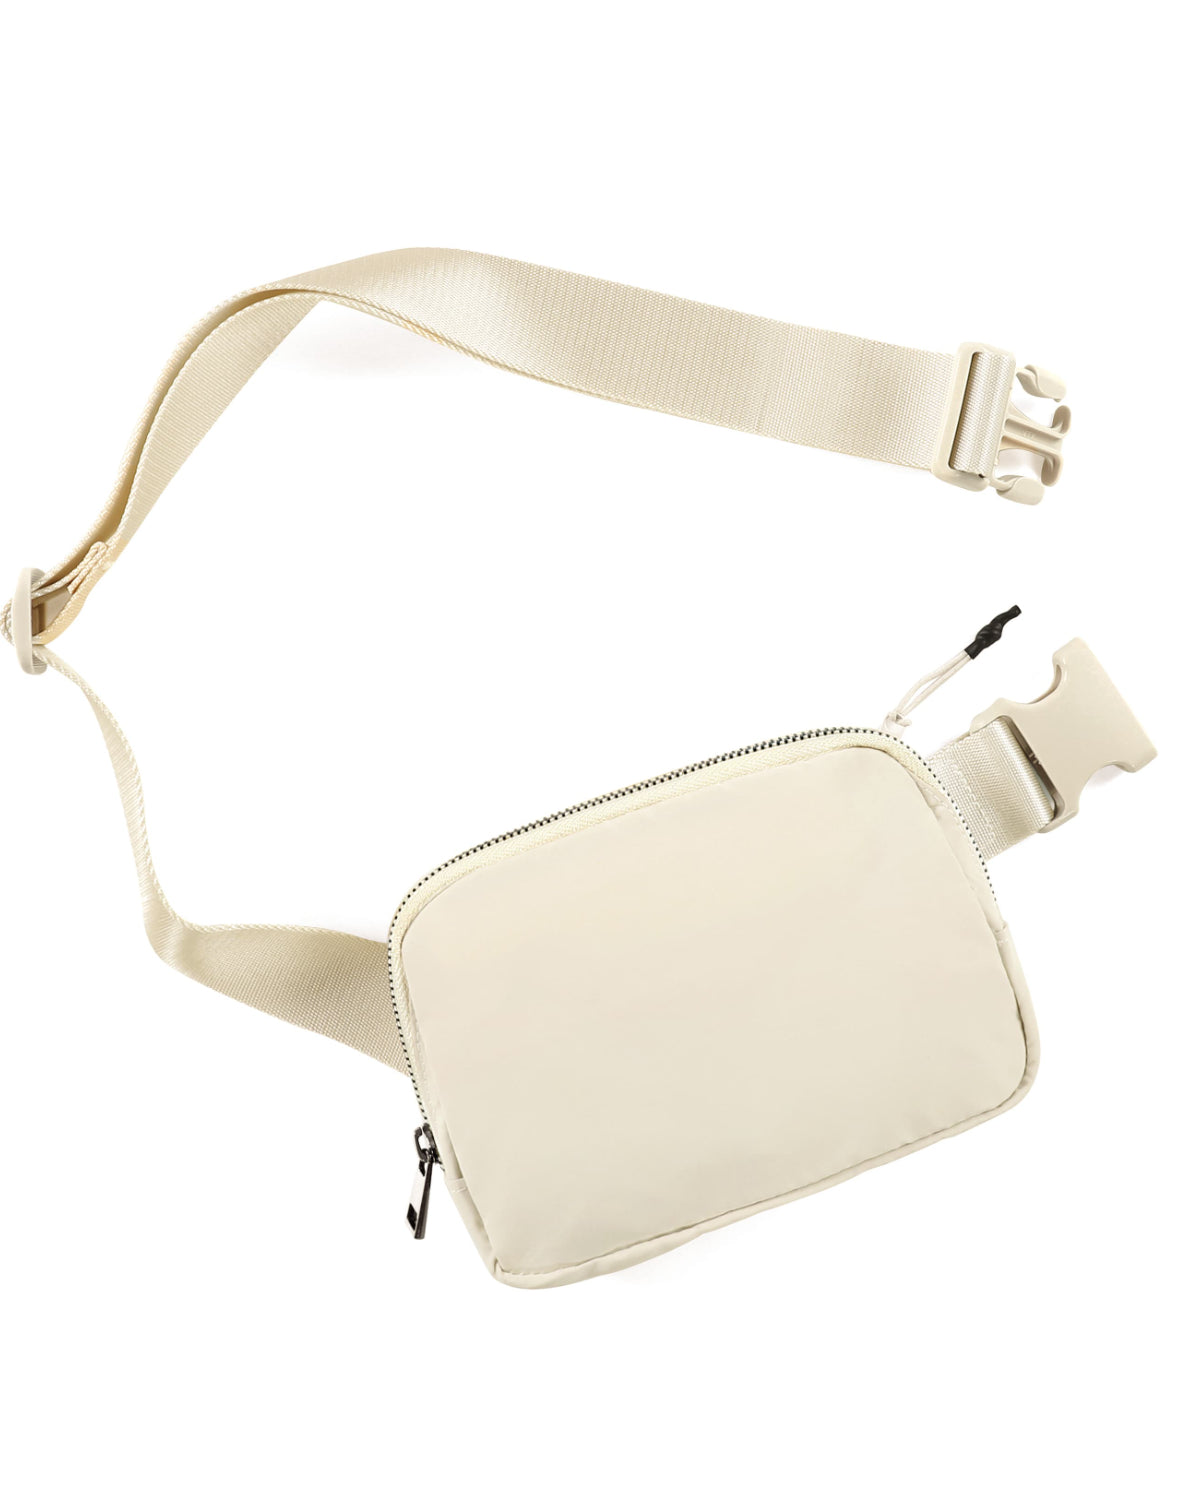 Unisex Mini Belt Bag Ivory 8" x 2" x 5.5" - ododos